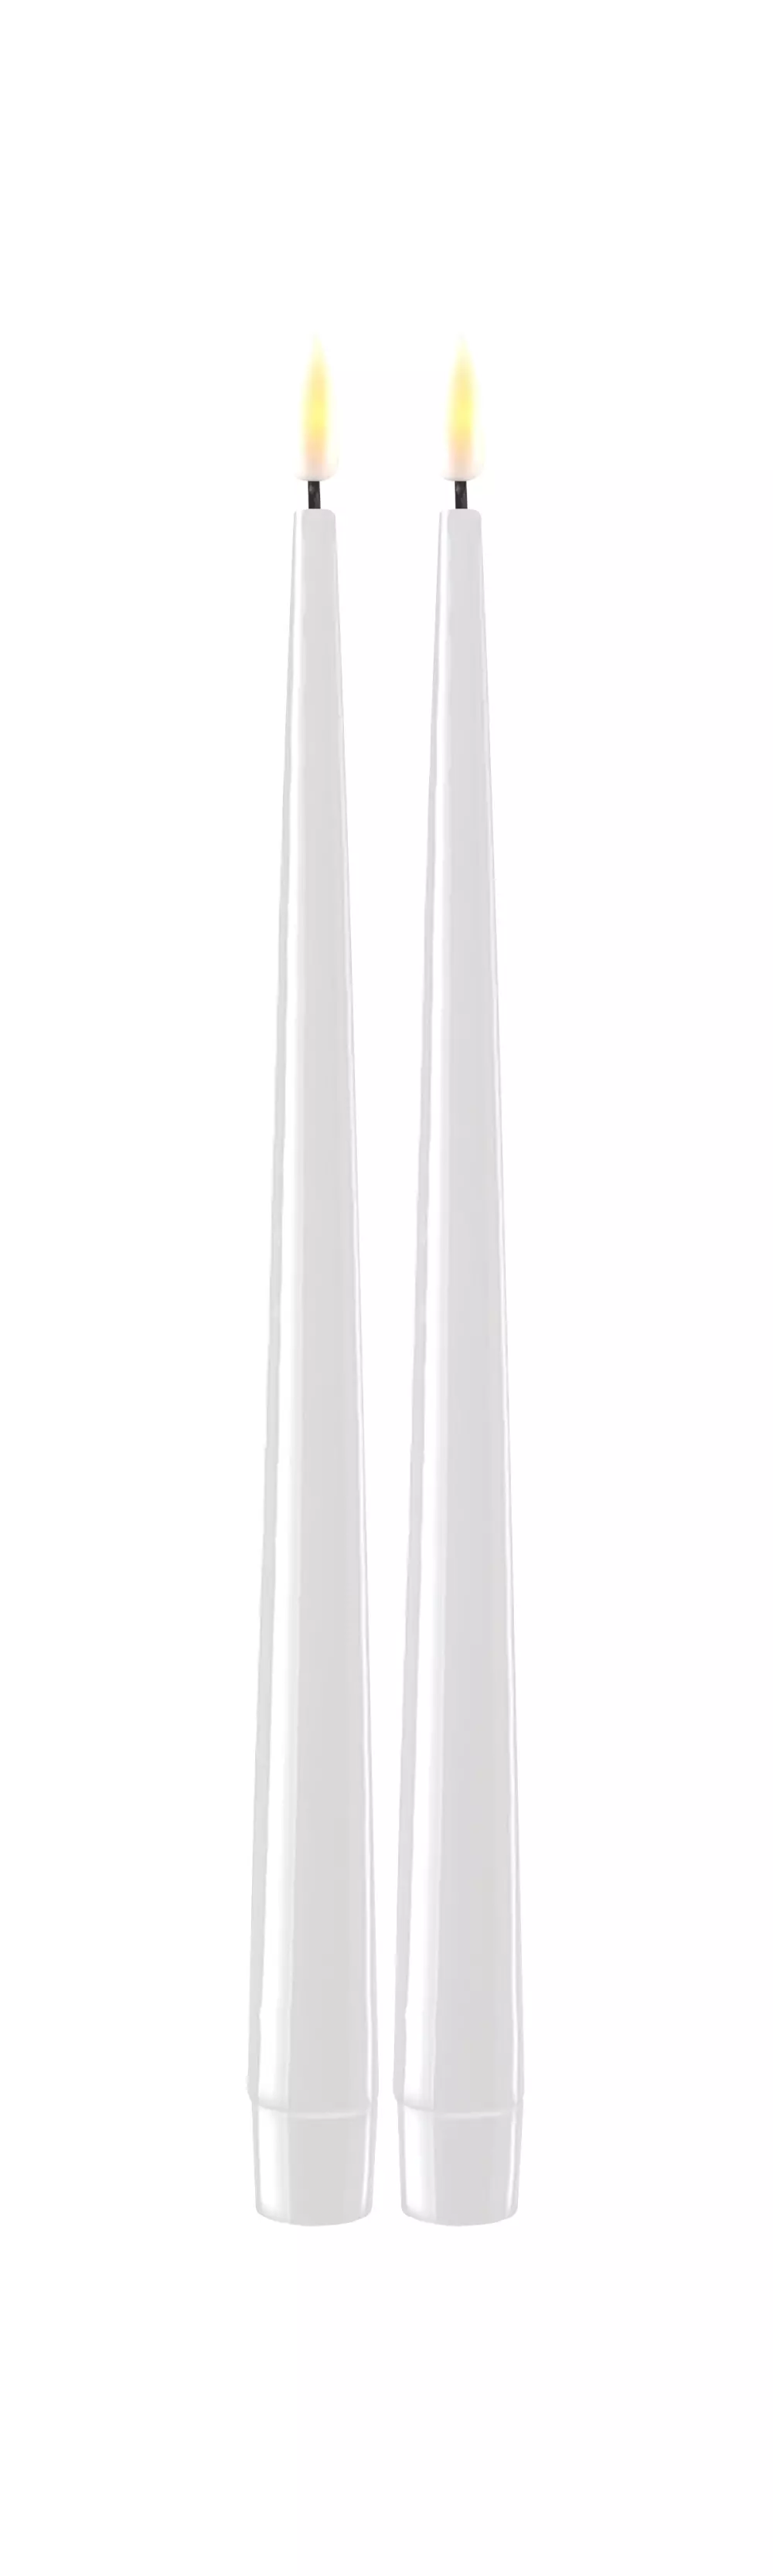 Deluxe Kronelys Hvit 28cm 2pk, 5744001241295, RF-K-0001, Interiør, Lys, Deluxe Homeart, Hvid LED Kertelys med Lak, 2 stk (28 cm)